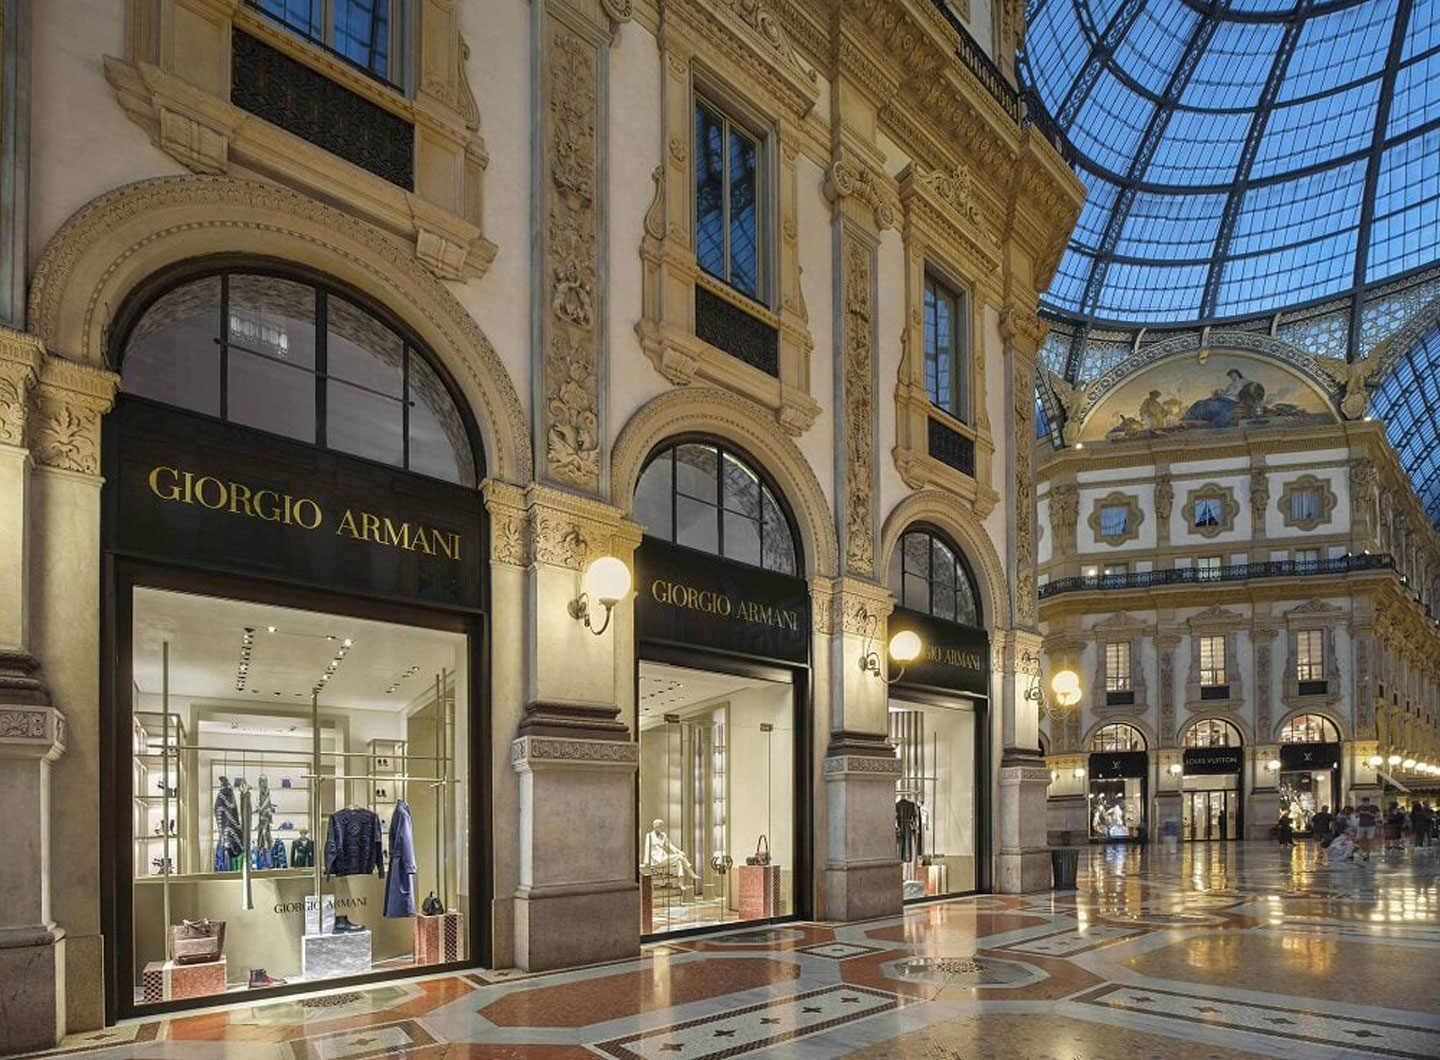 Giorgio Armani’s new 300-square-metre store in Galleria Vittorio Emanuele, Milan